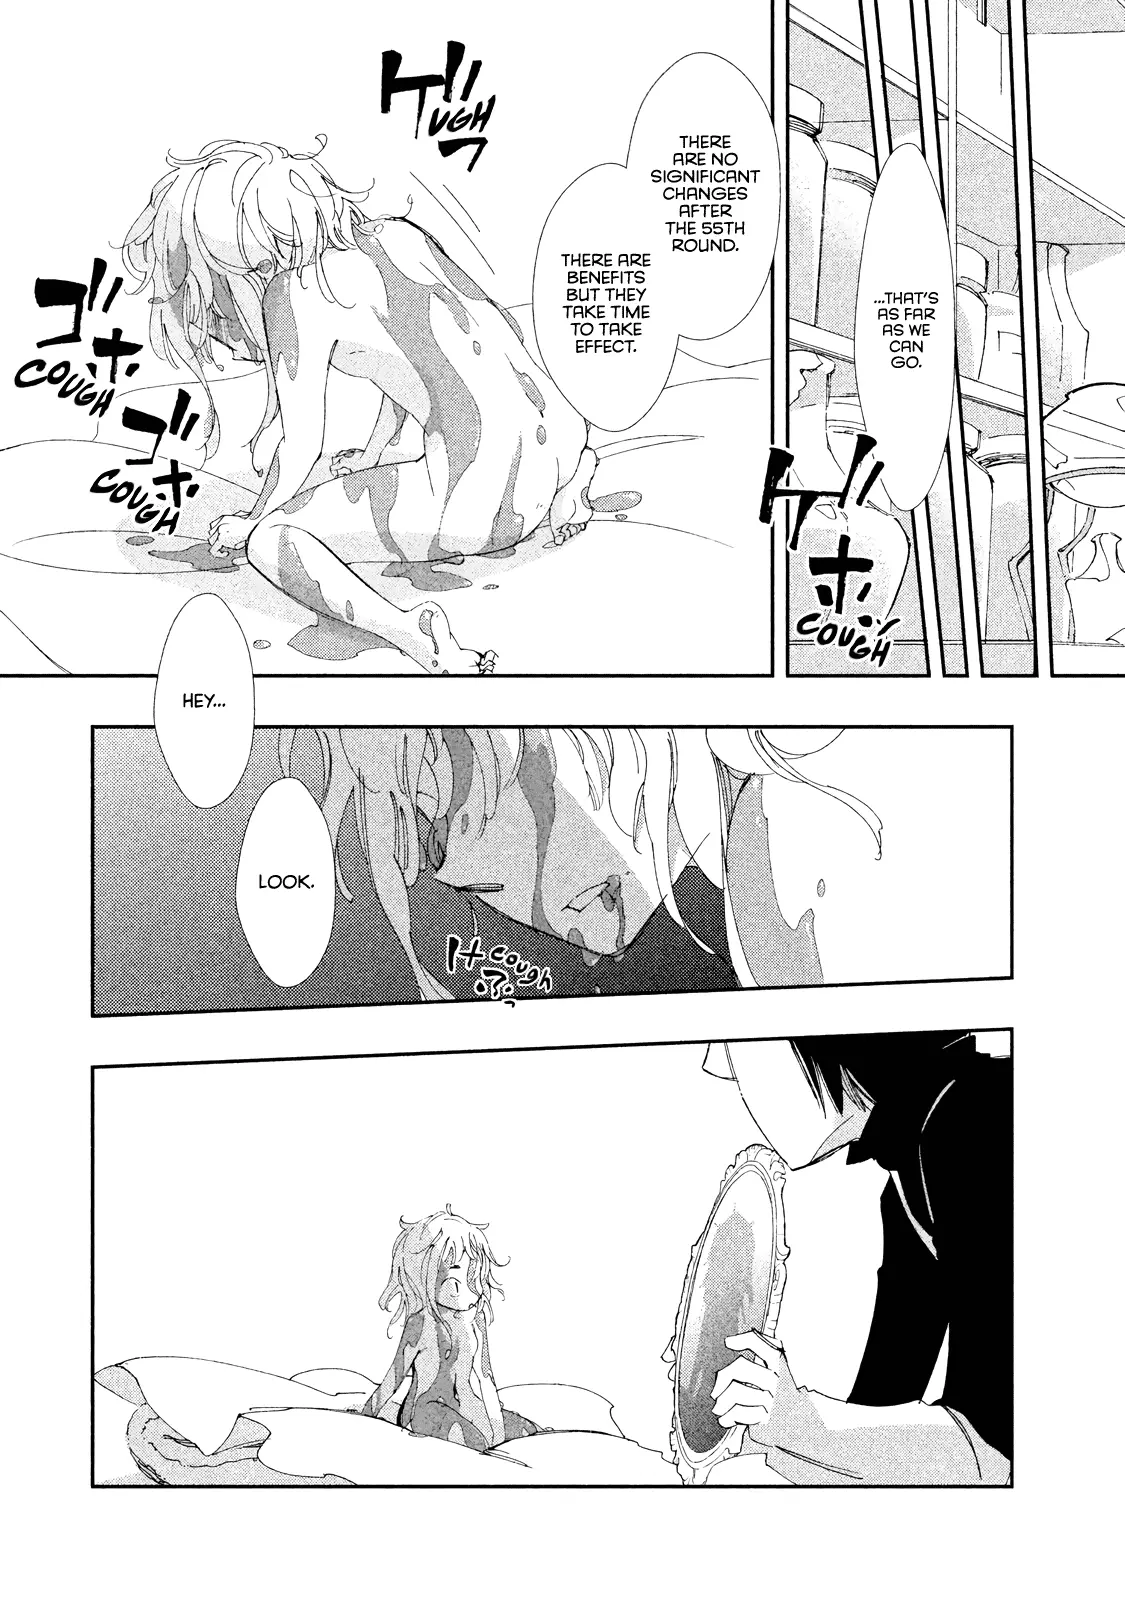 Amegashi - 8 page 15-75c709af